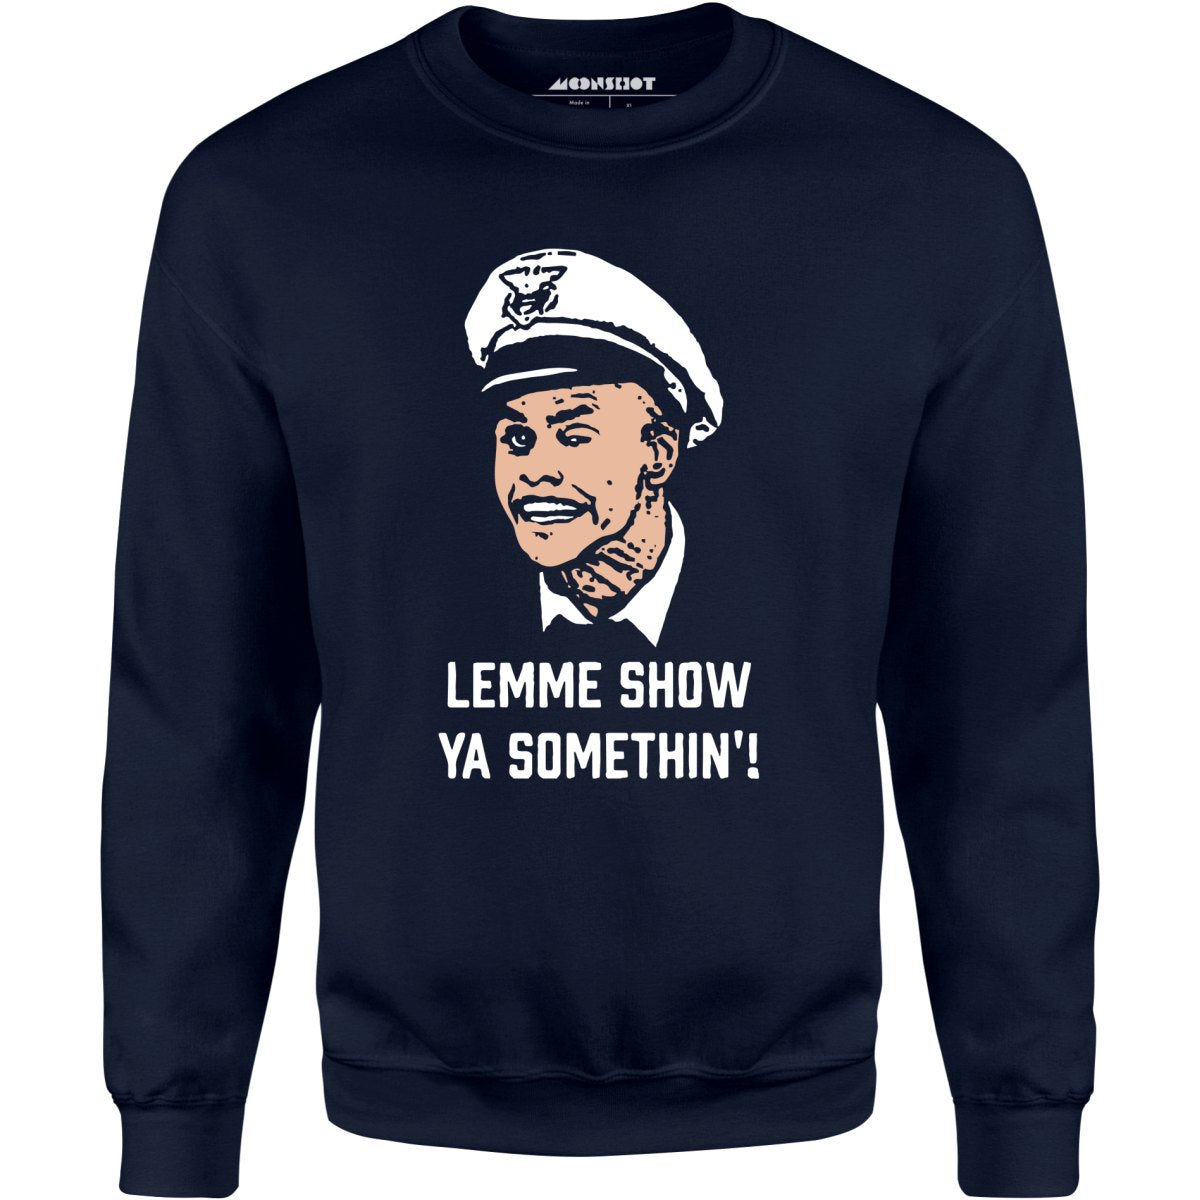 Lemme Show Ya Somethin'! - Unisex Sweatshirt